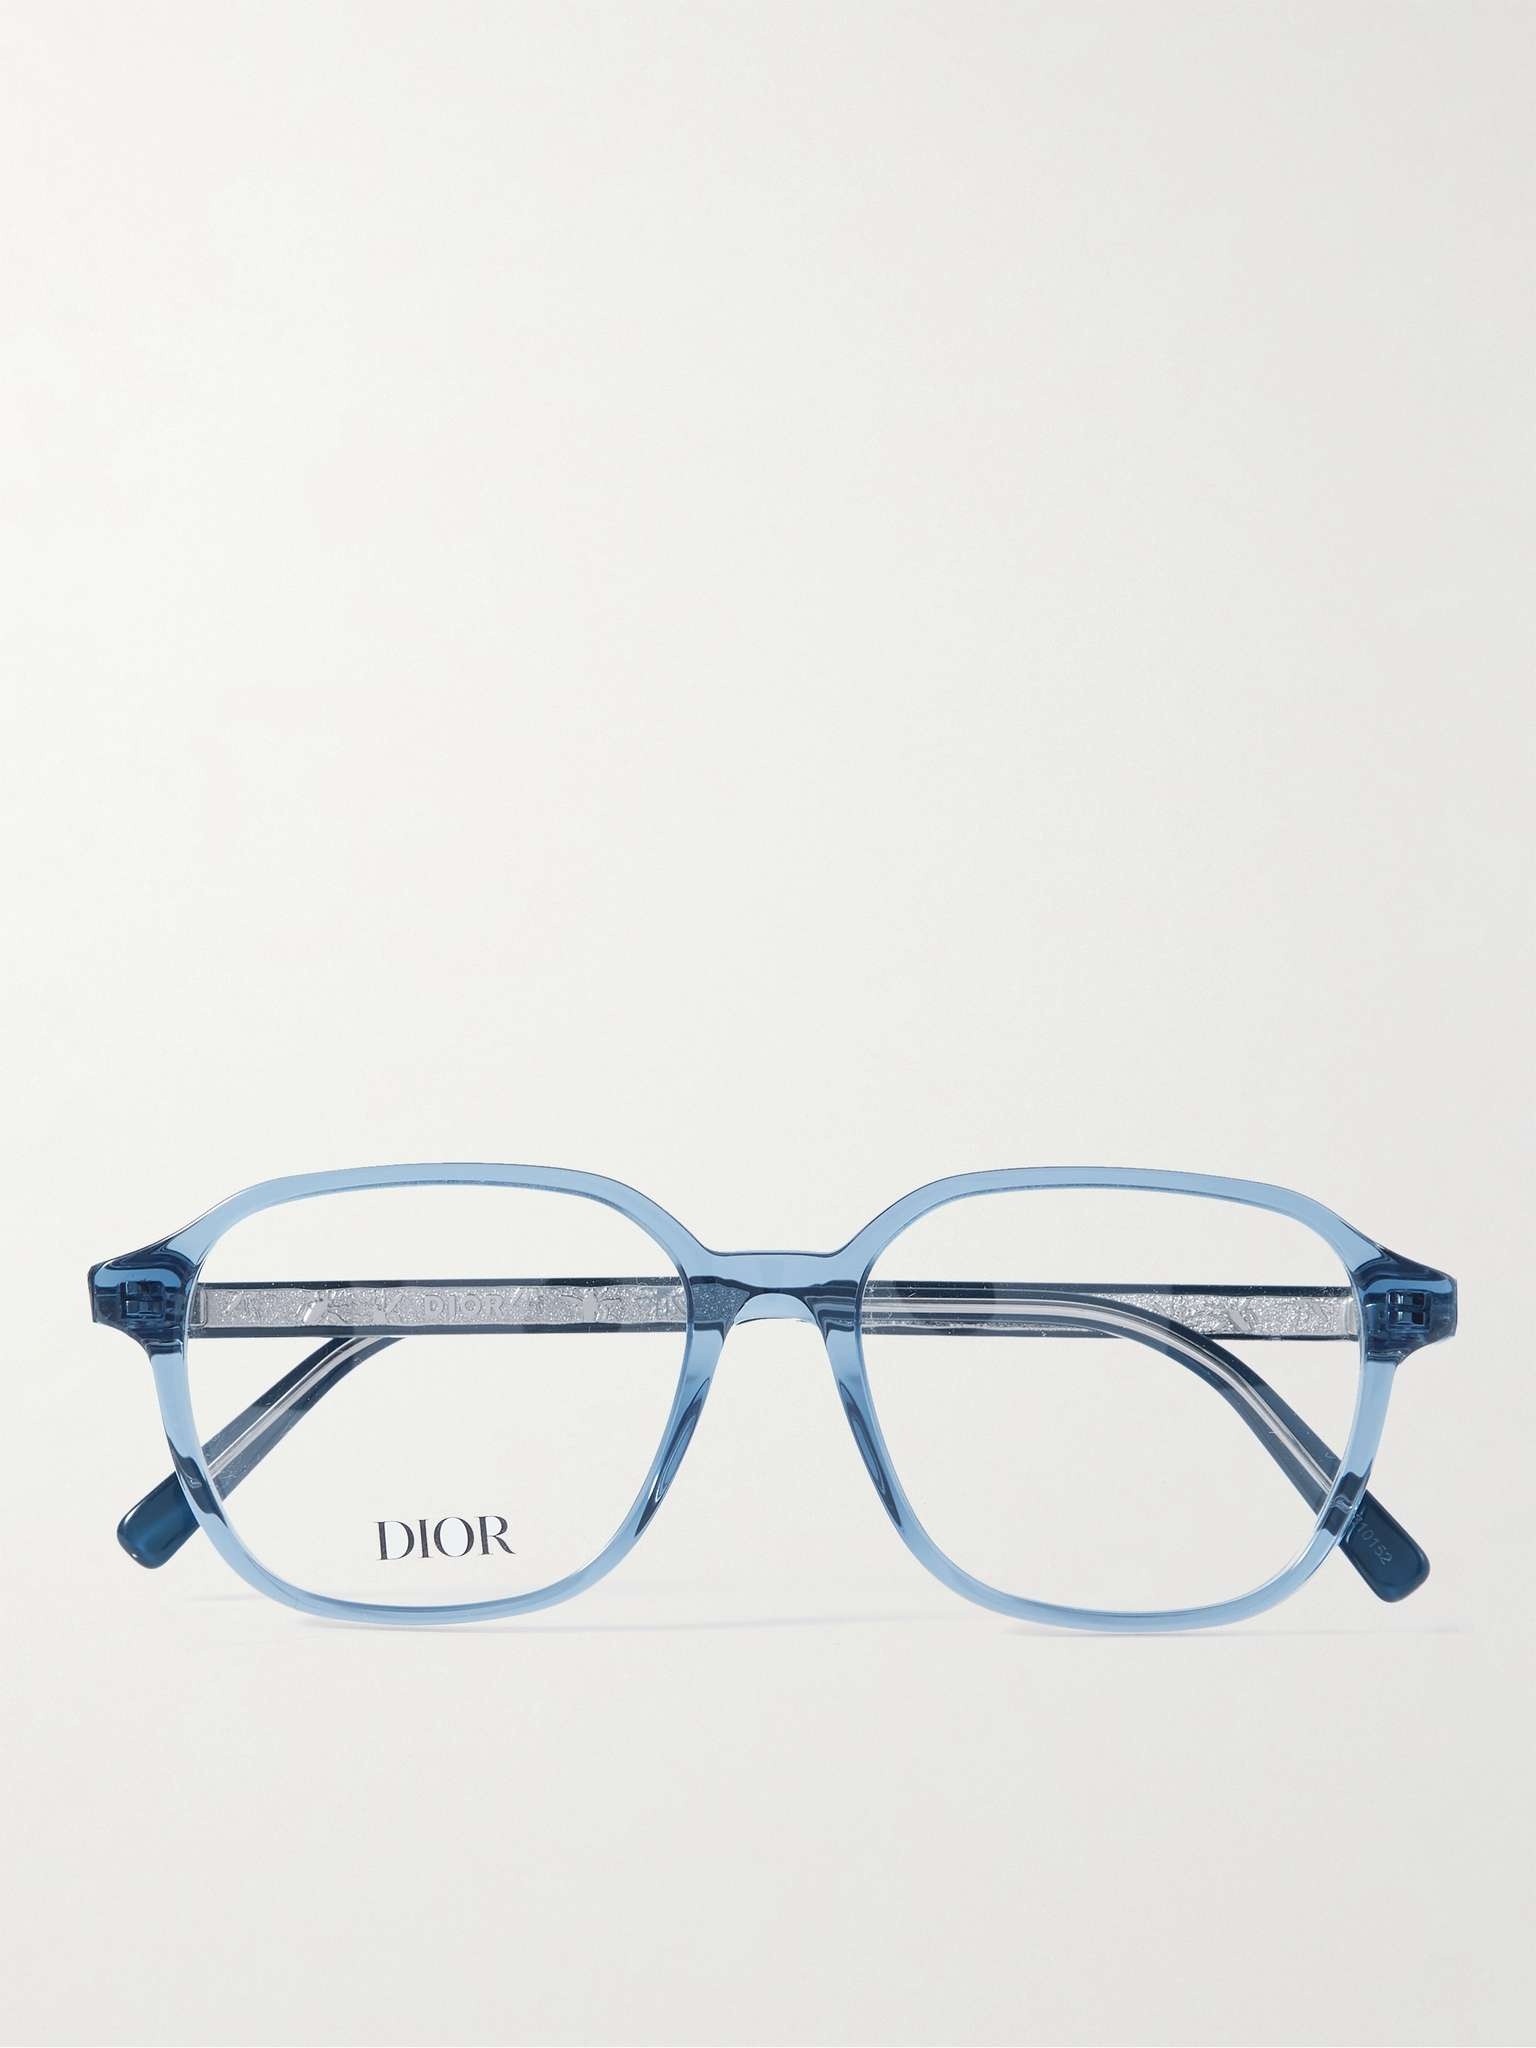 InDiorO S3I Square-Frame Tortoiseshell Acetate Optical Glasses - 1